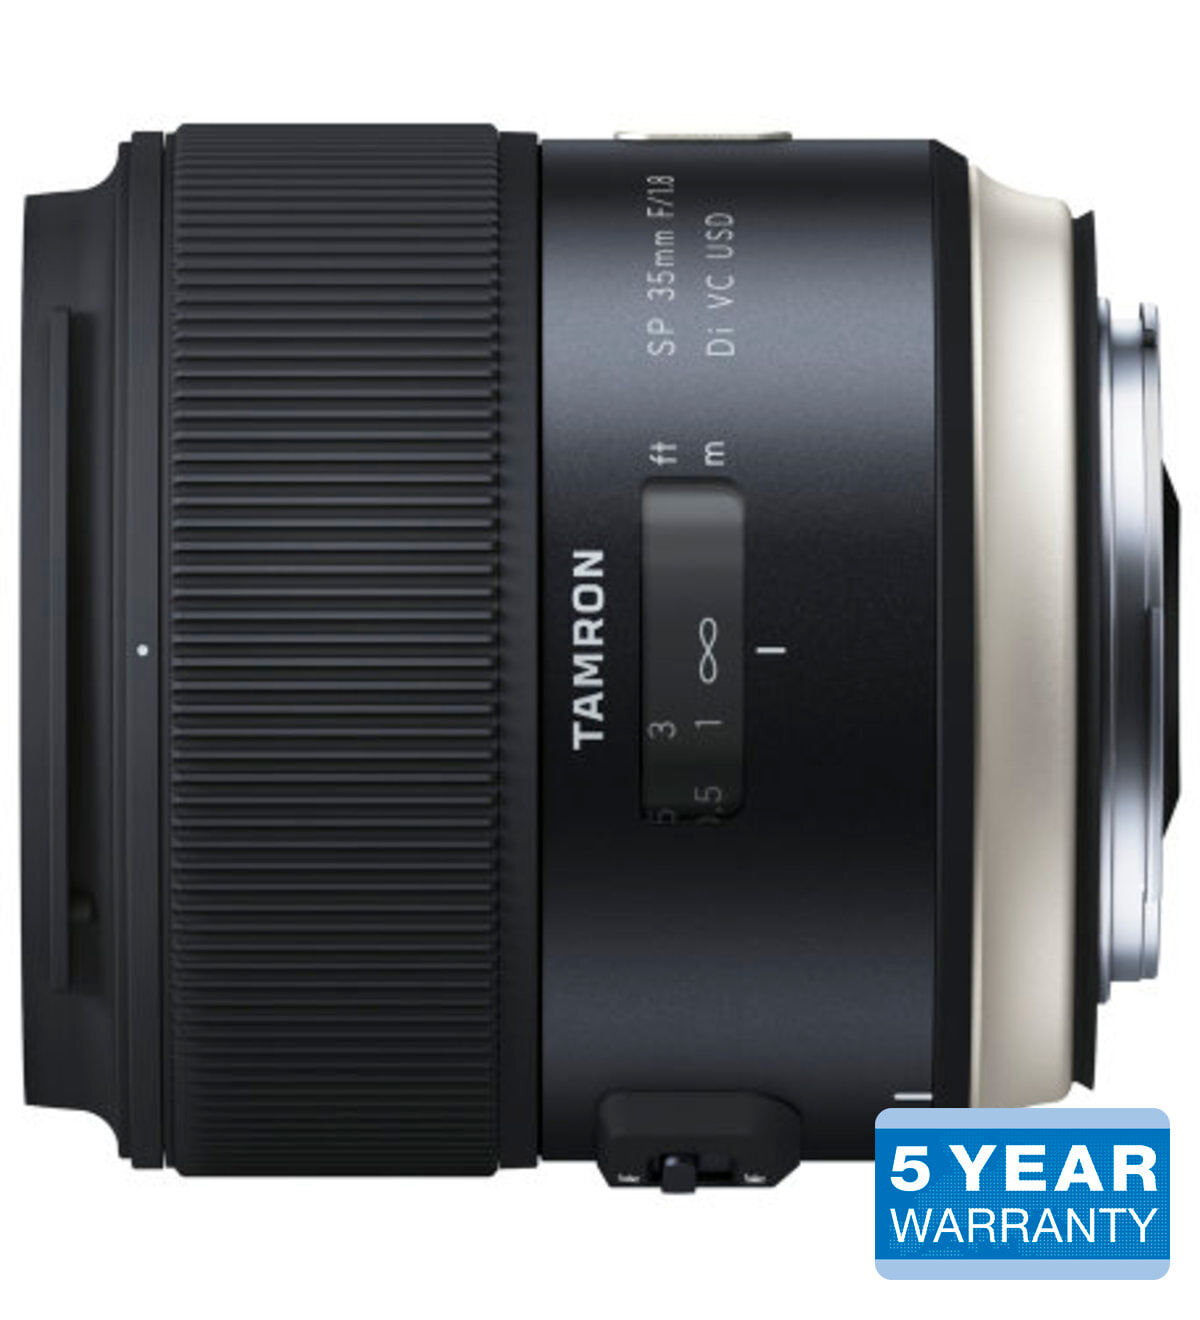 Tamron SP 35mm f/1.8 DI VC USD Nikon objektiivi